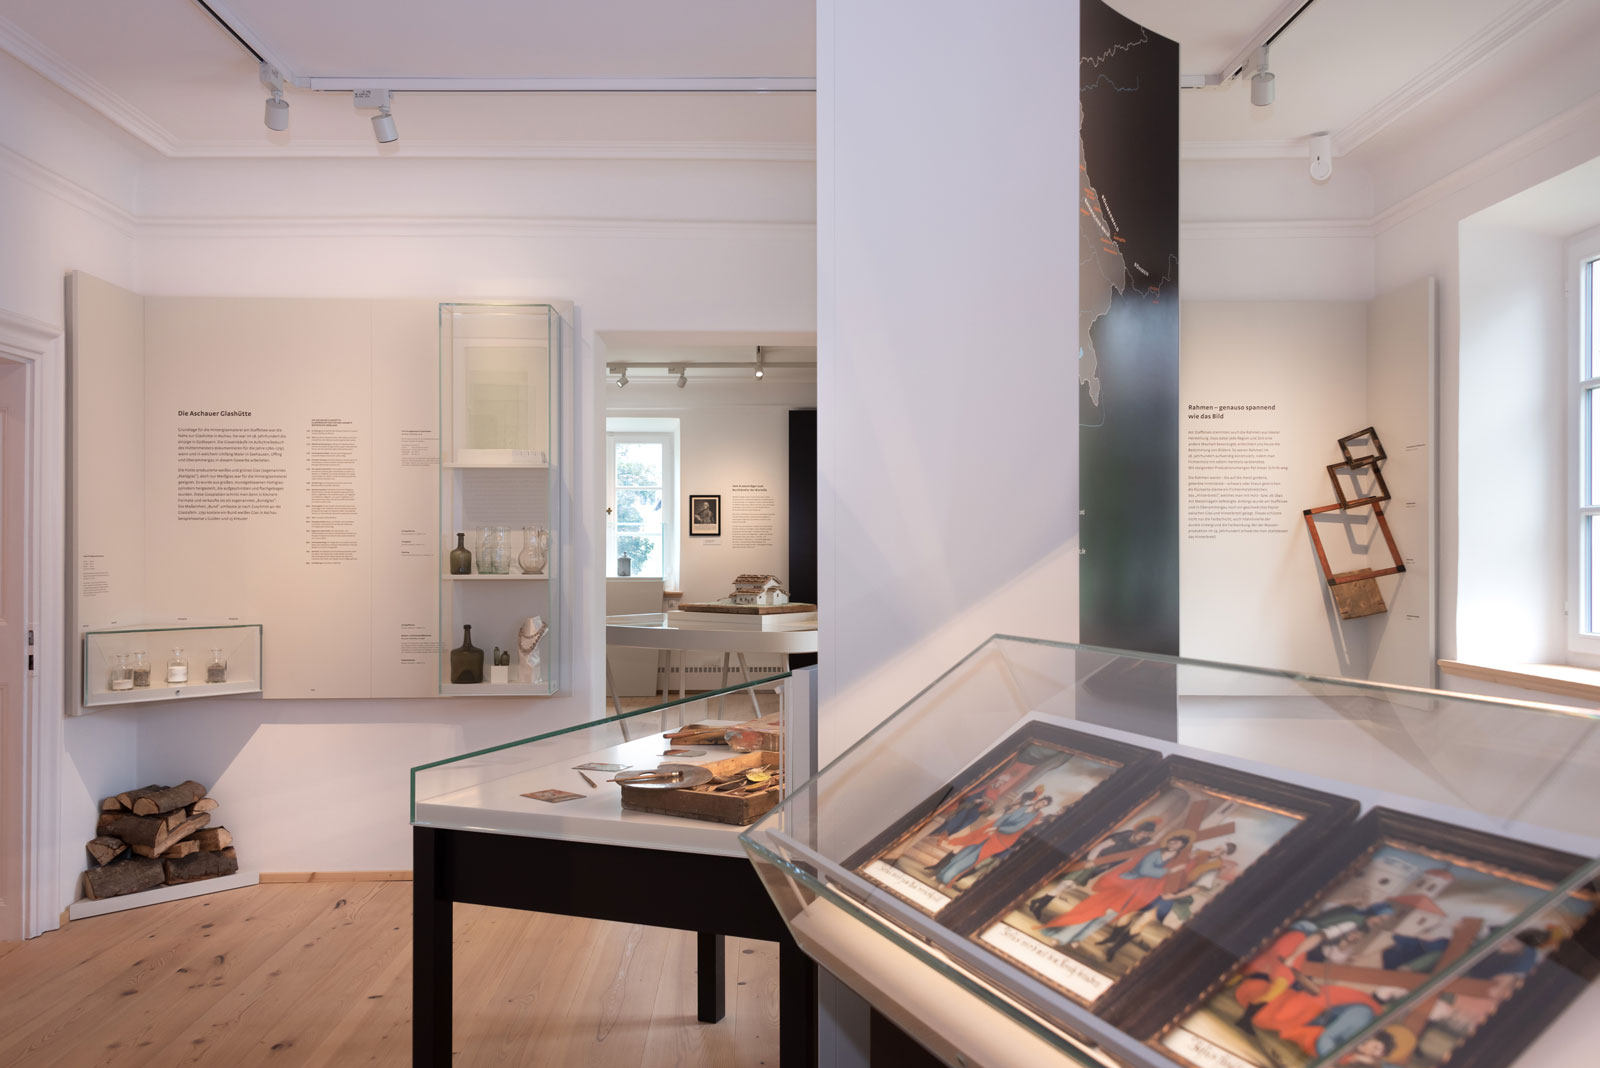 Das Referenzbild für Ausstellungsgestaltung aus der Dauerausstellung Seehausen und der Staffelsee zeigt den Ausstellungsparcours mit Vitrinen.